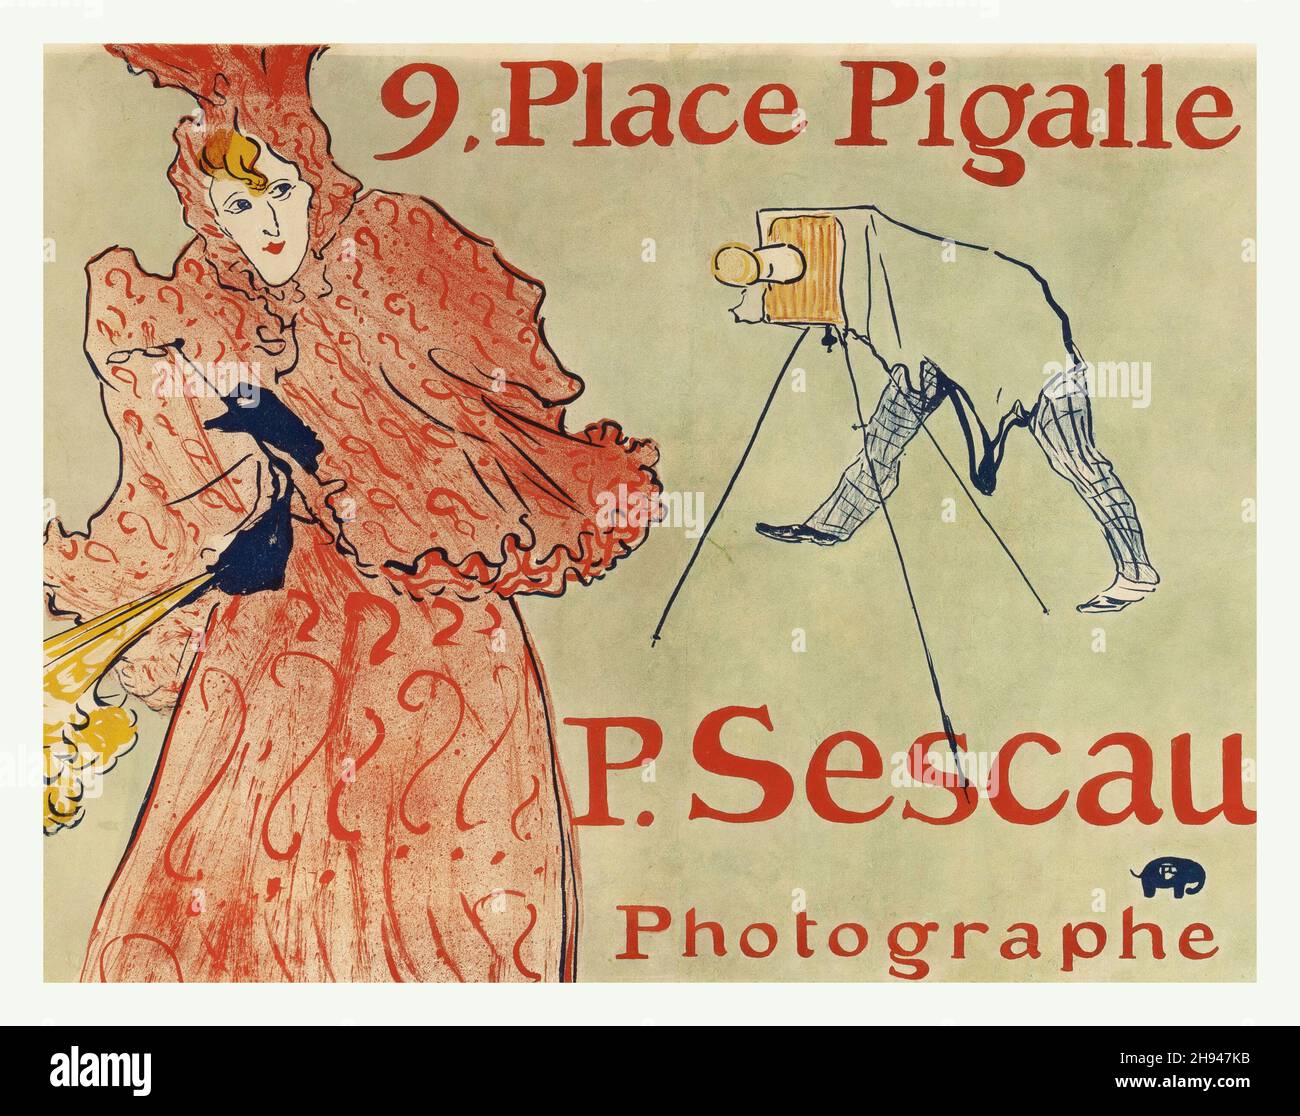 HENRI DE TOULOUSE-LAUTREC (francese, 1864-1901) le Photographe Sescau, 9 Place Pigalle Foto Stock